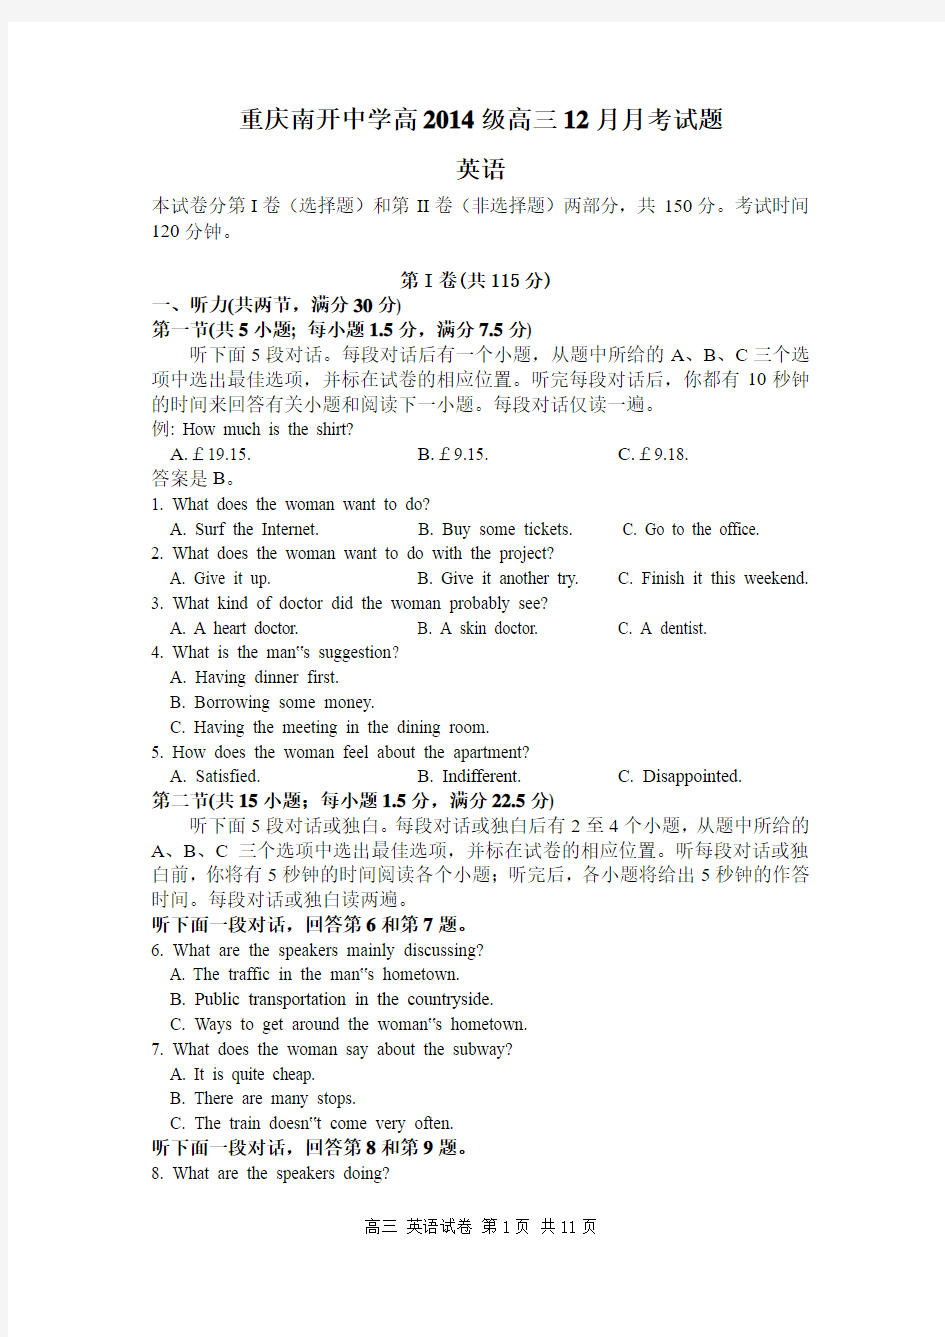 重庆南开中学高2014级高三12月月考试题